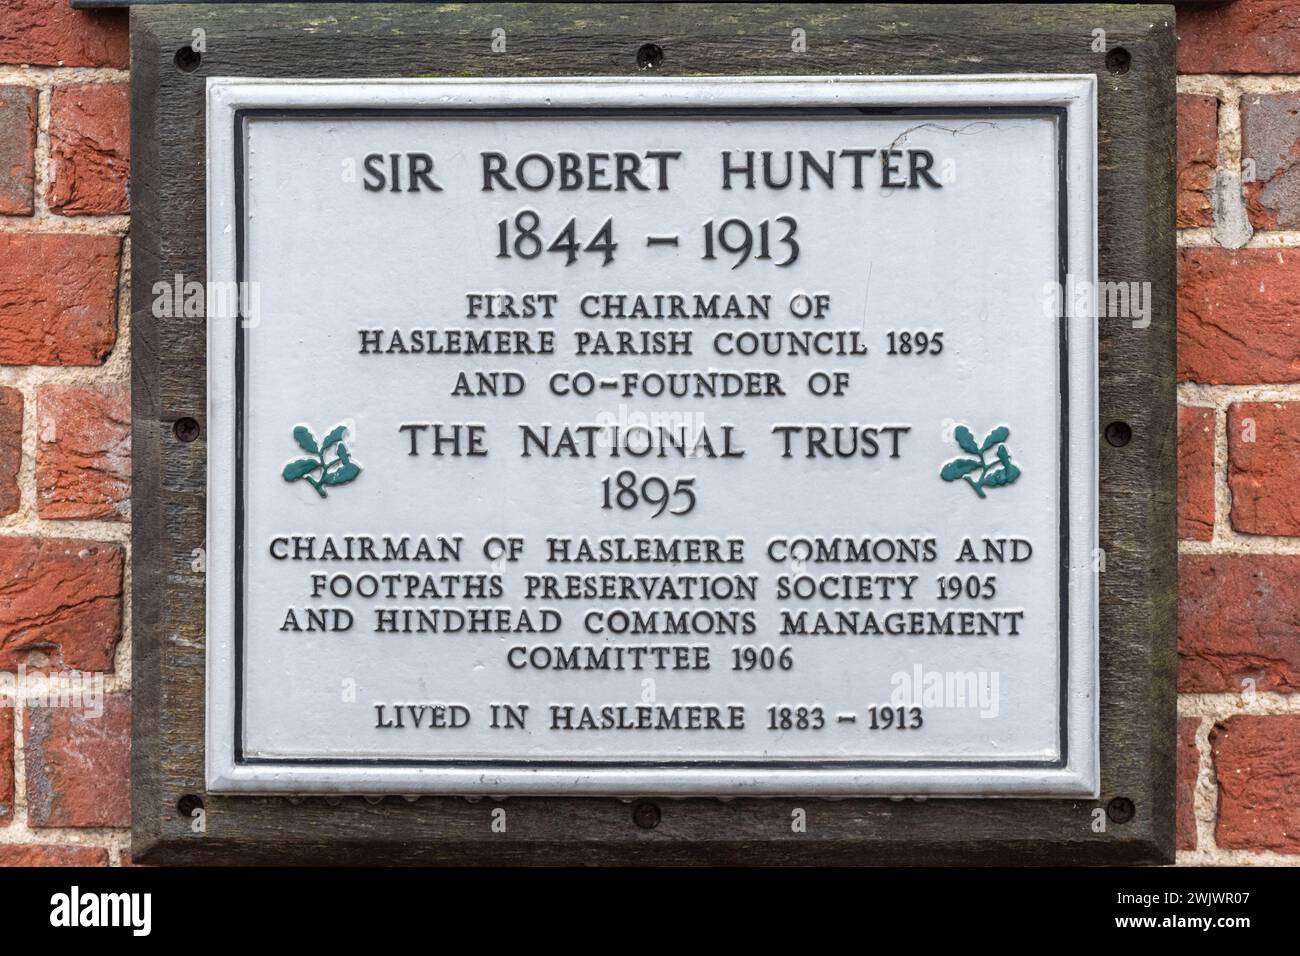 Gedenktafel zum Gedenken an Sir Robert Hunter, erster Vorsitzender des Haslemere Parish Council und Mitbegründer des National Trust im Jahr 1895 in Surrey, England, Großbritannien Stockfoto